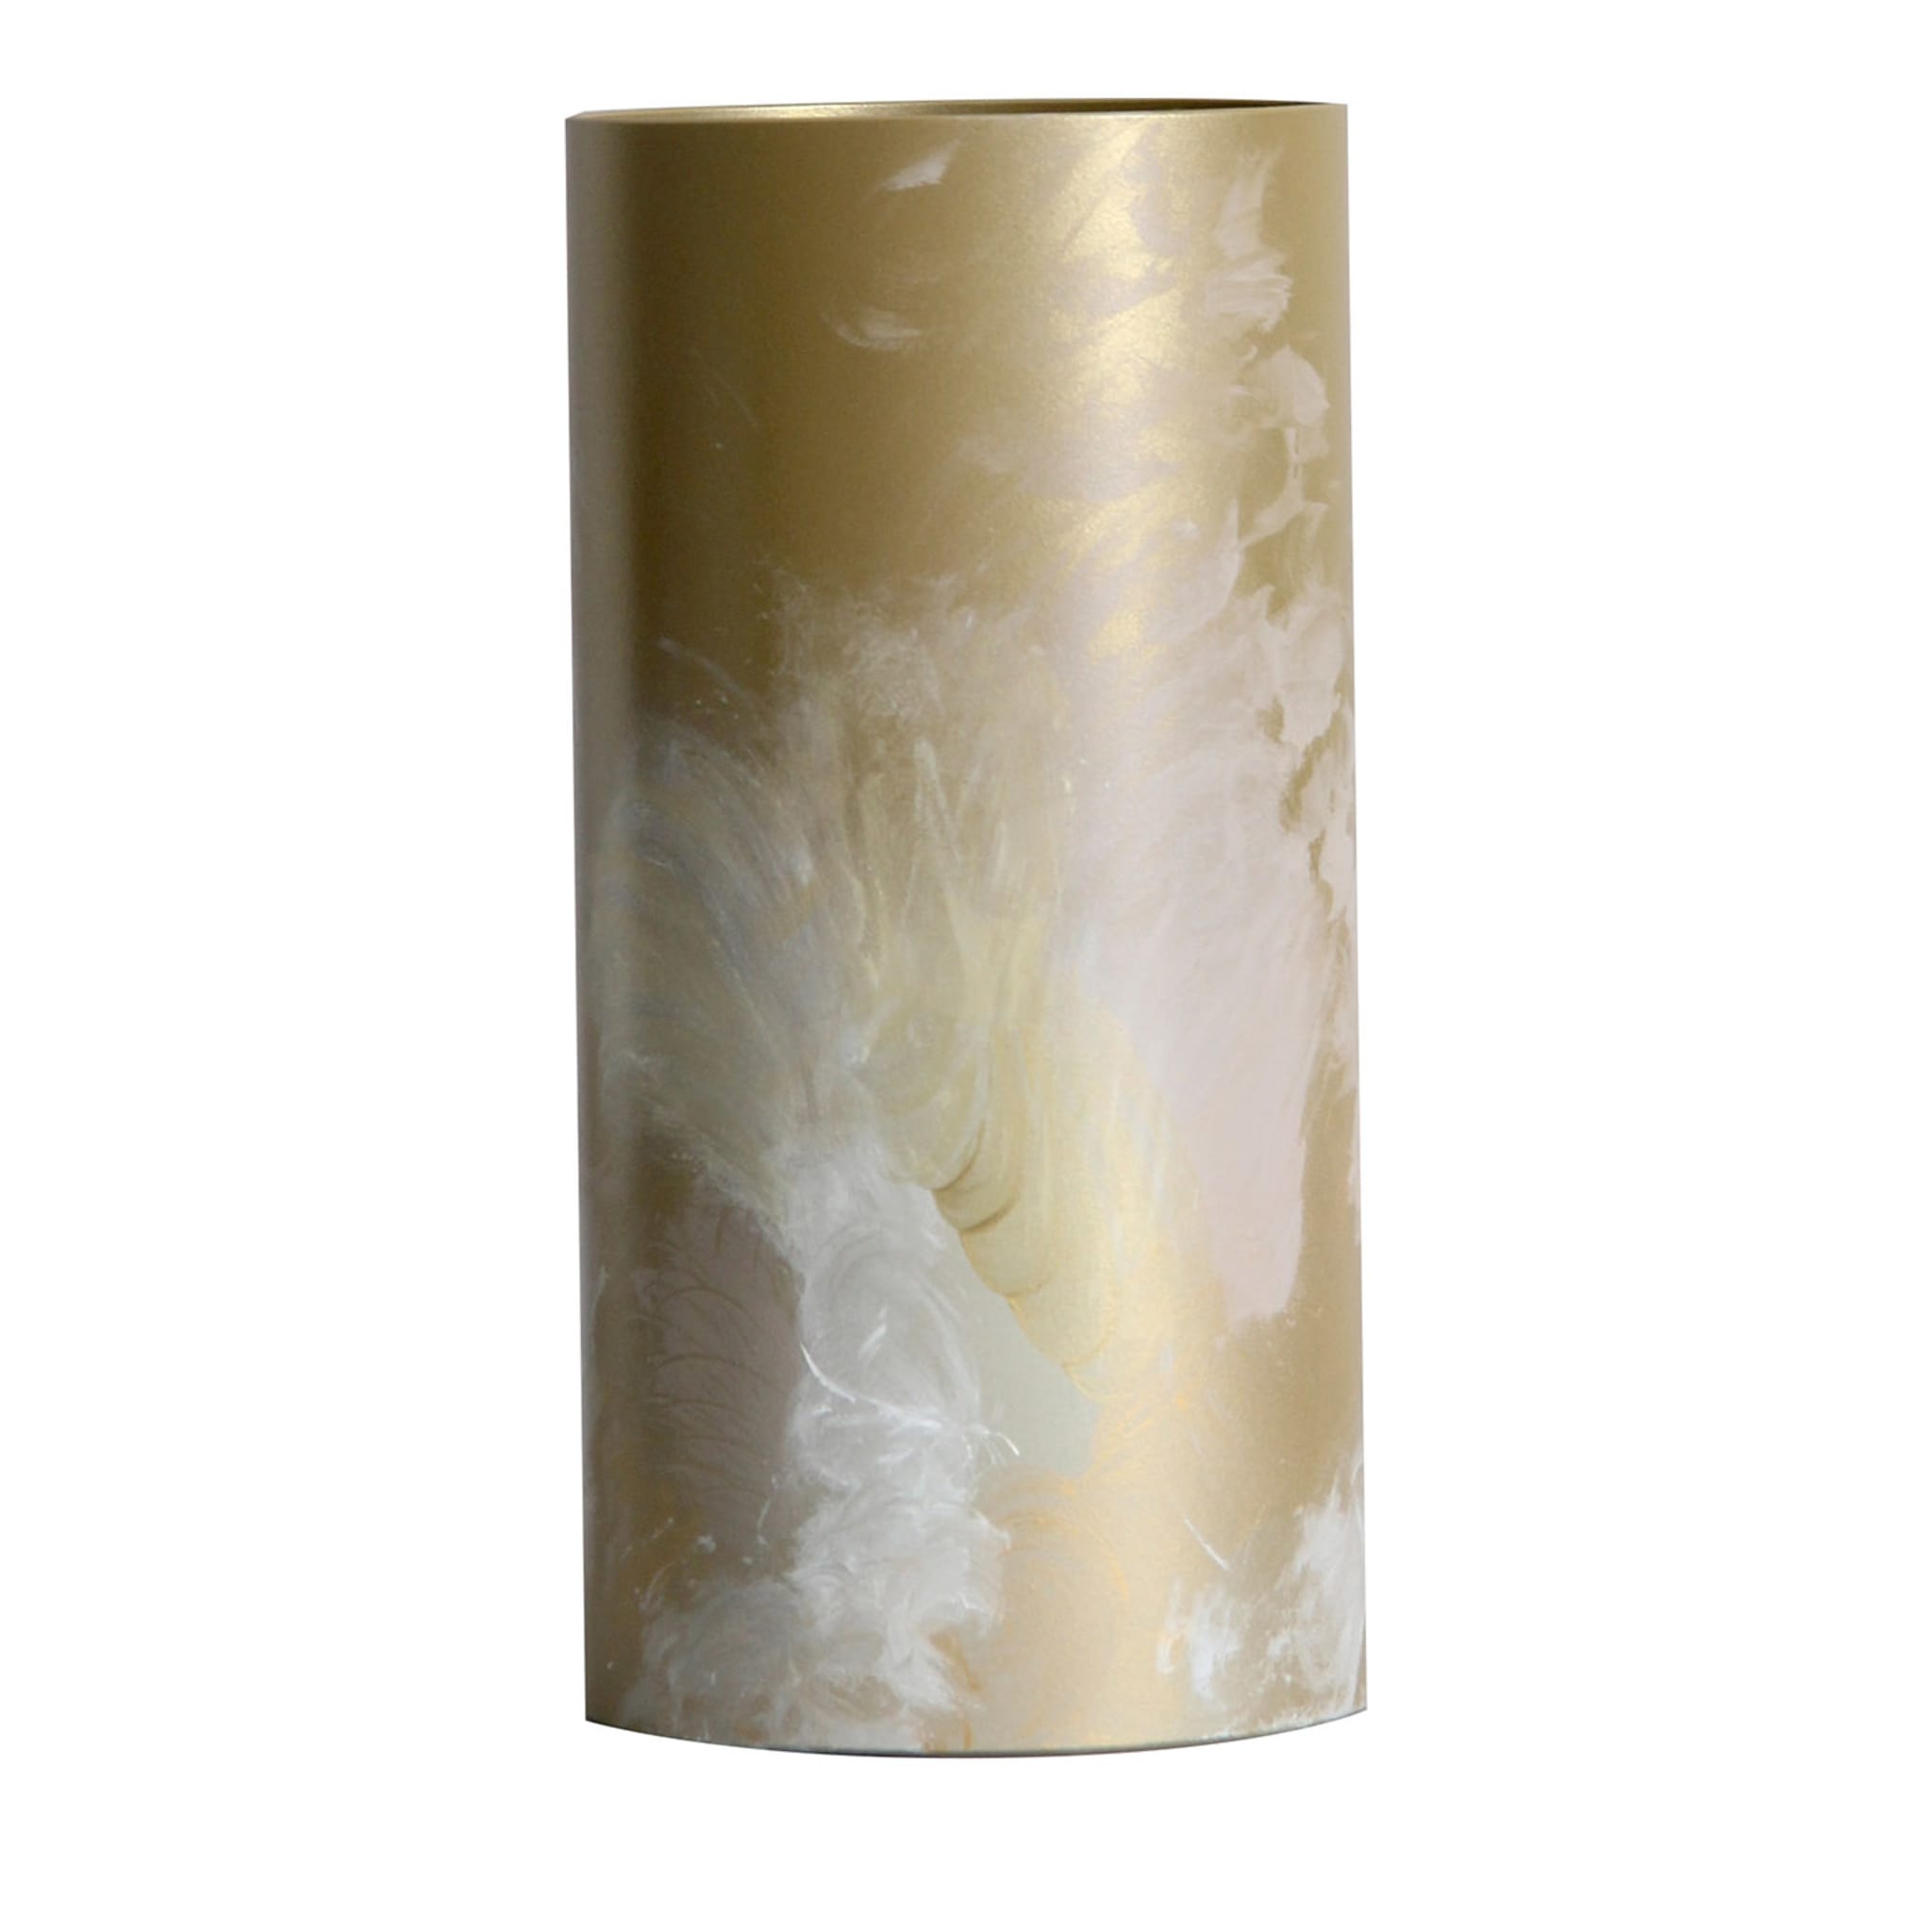 Flora M Vaso cilindrico dorato di Gabriela Azar Rubagotti #2 - Vista principale